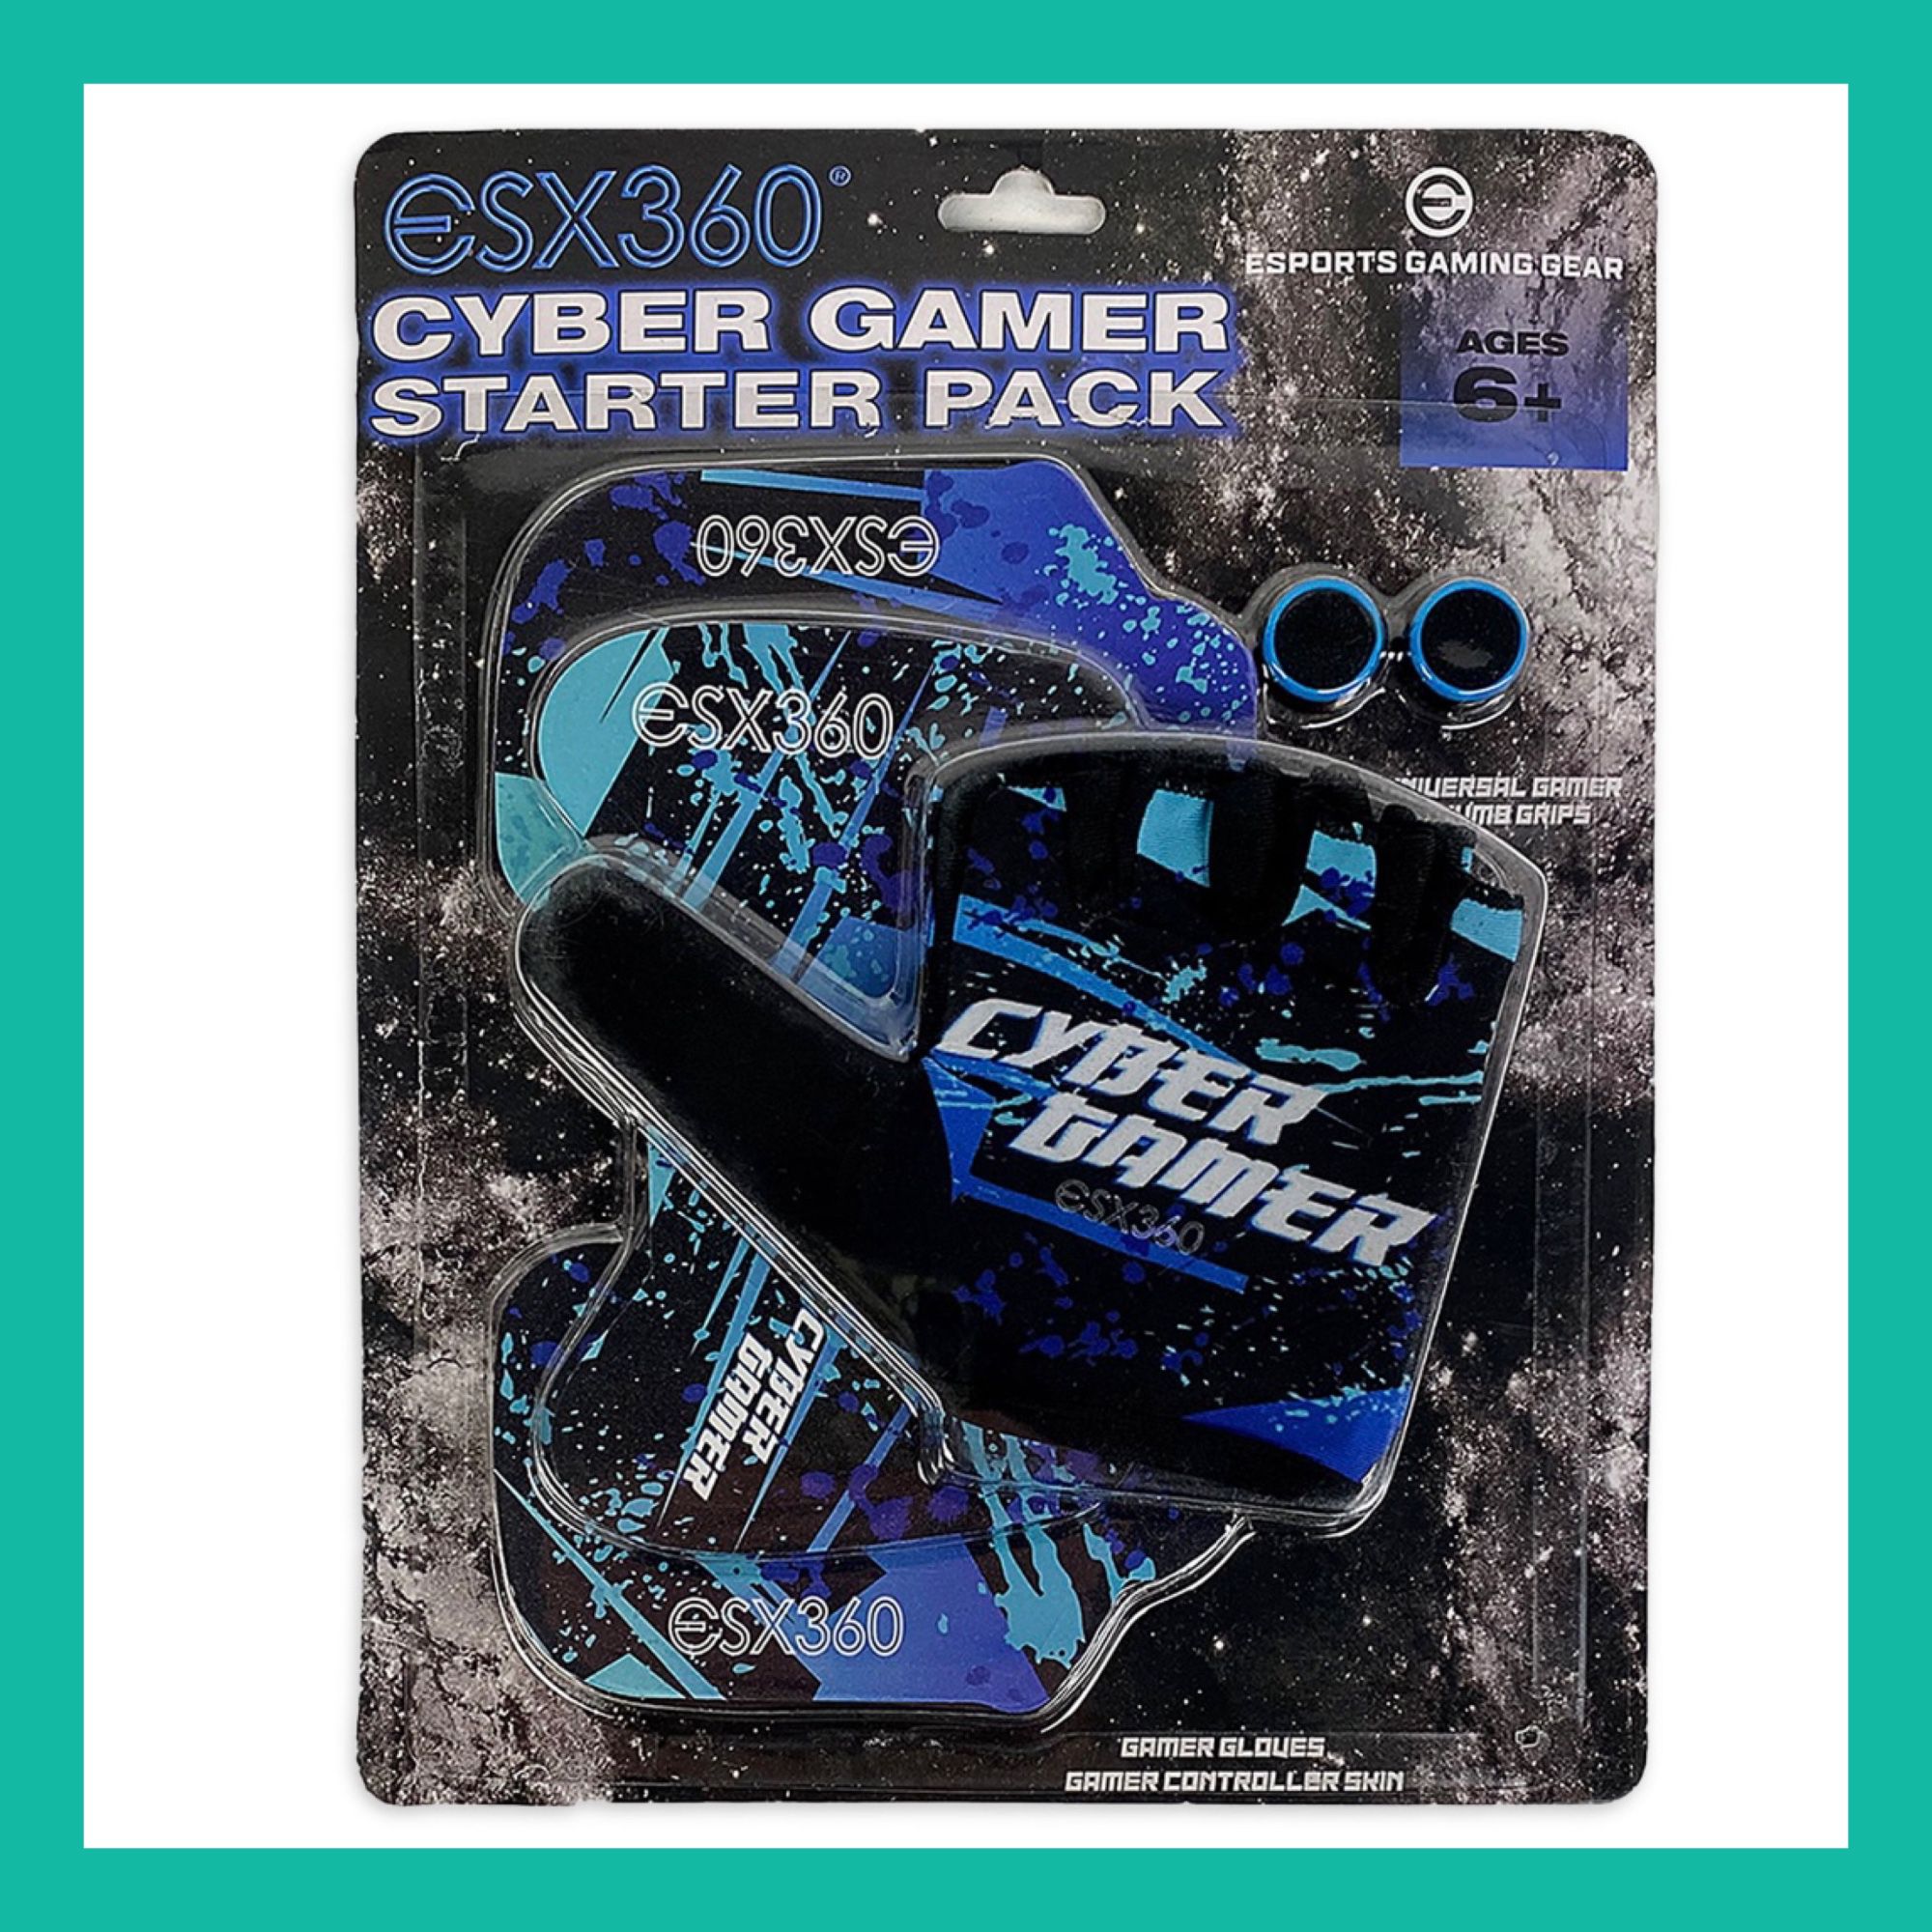 ESX360 Cyber Gamer Starter Pack